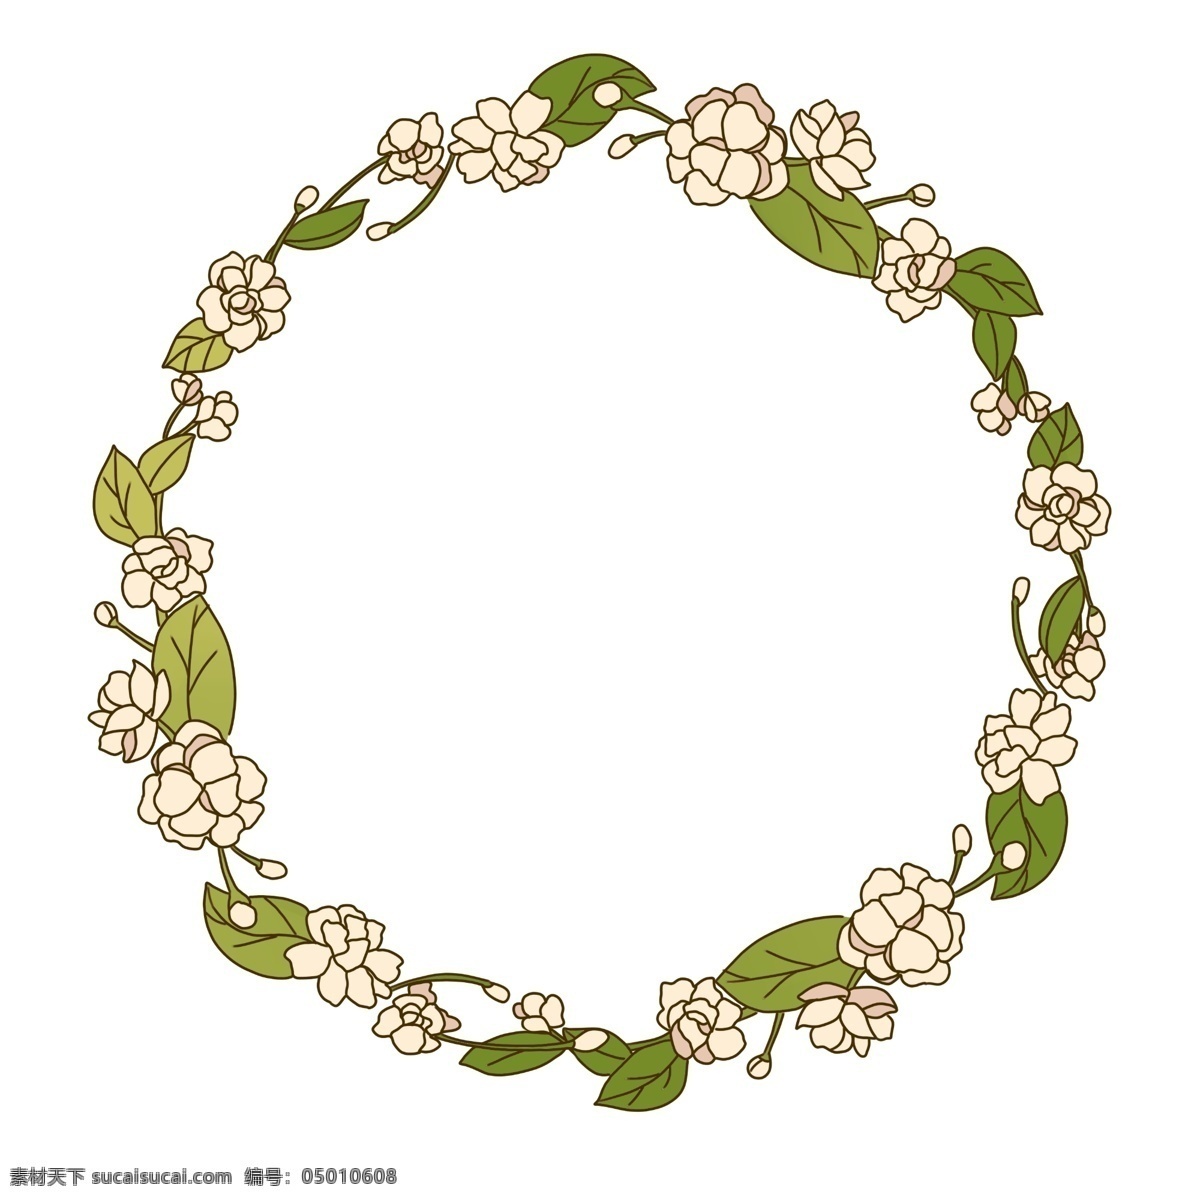 茉莉 花环 边框 插画 植物花环 绿色的叶子 白色的小花 漂亮的花环 花环装饰 花环插画 花环边框